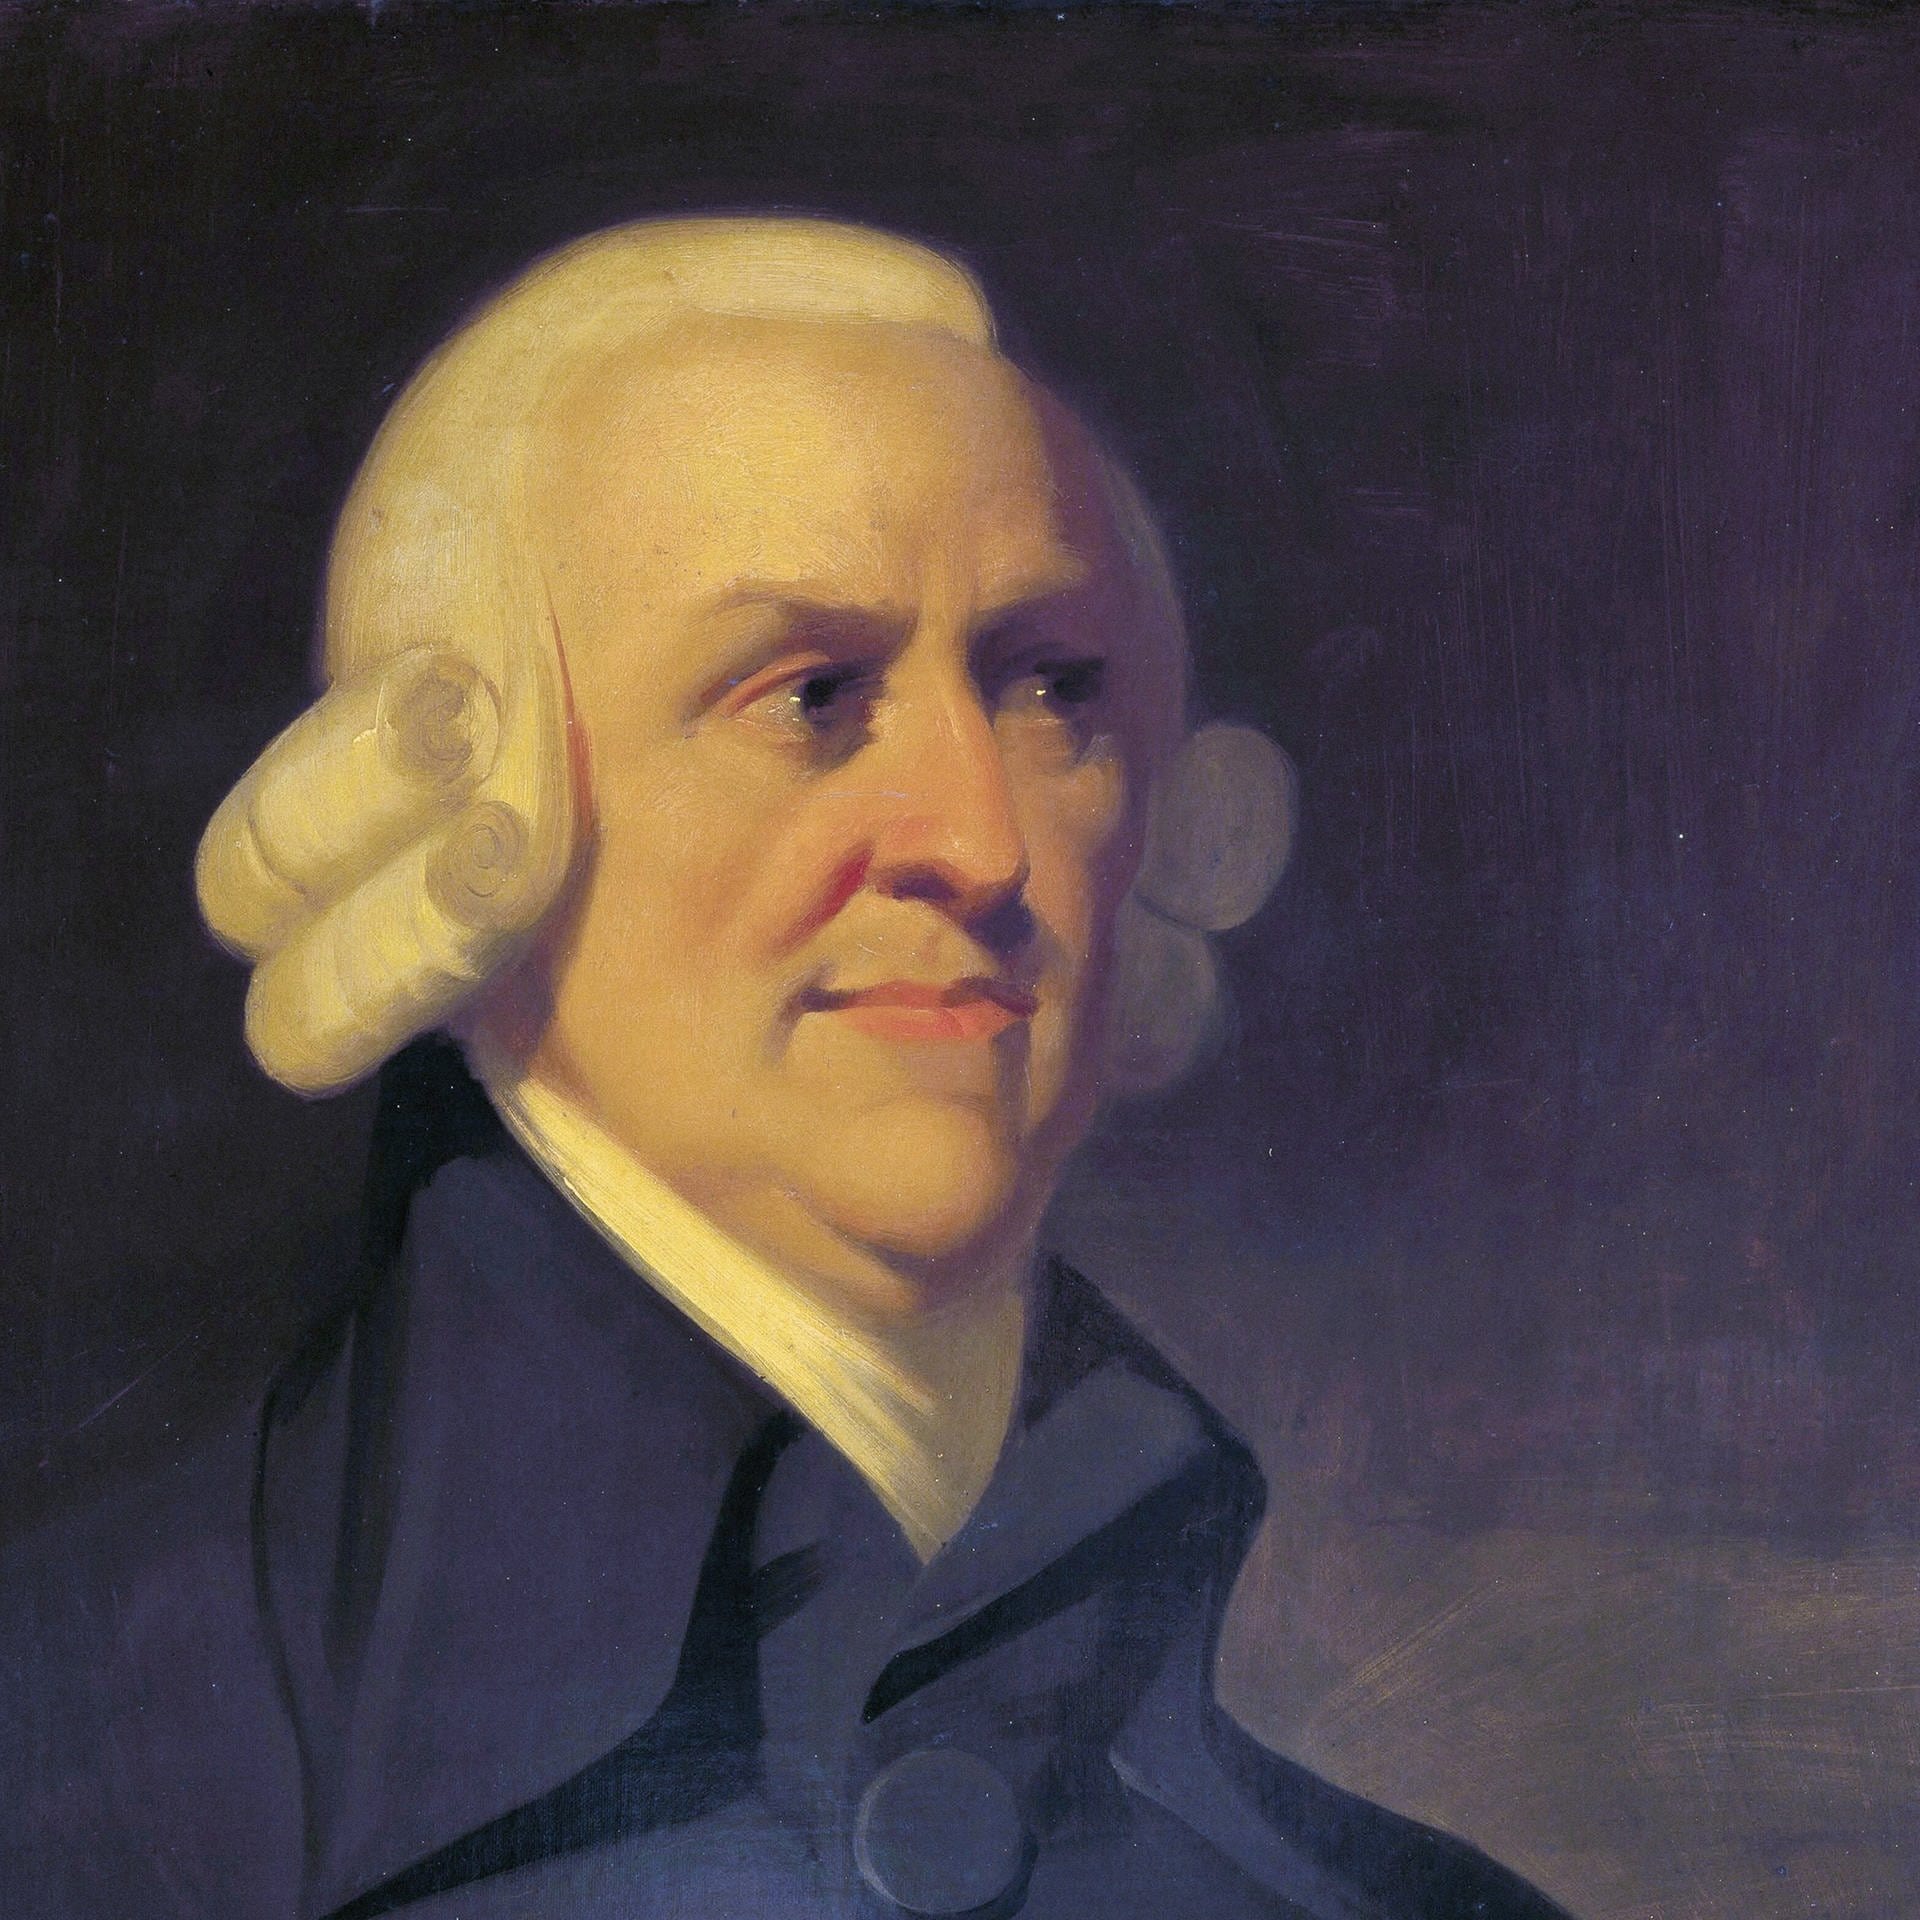 Der Philosoph Adam Smith – Vordenker der sozialen Marktwirtschaft